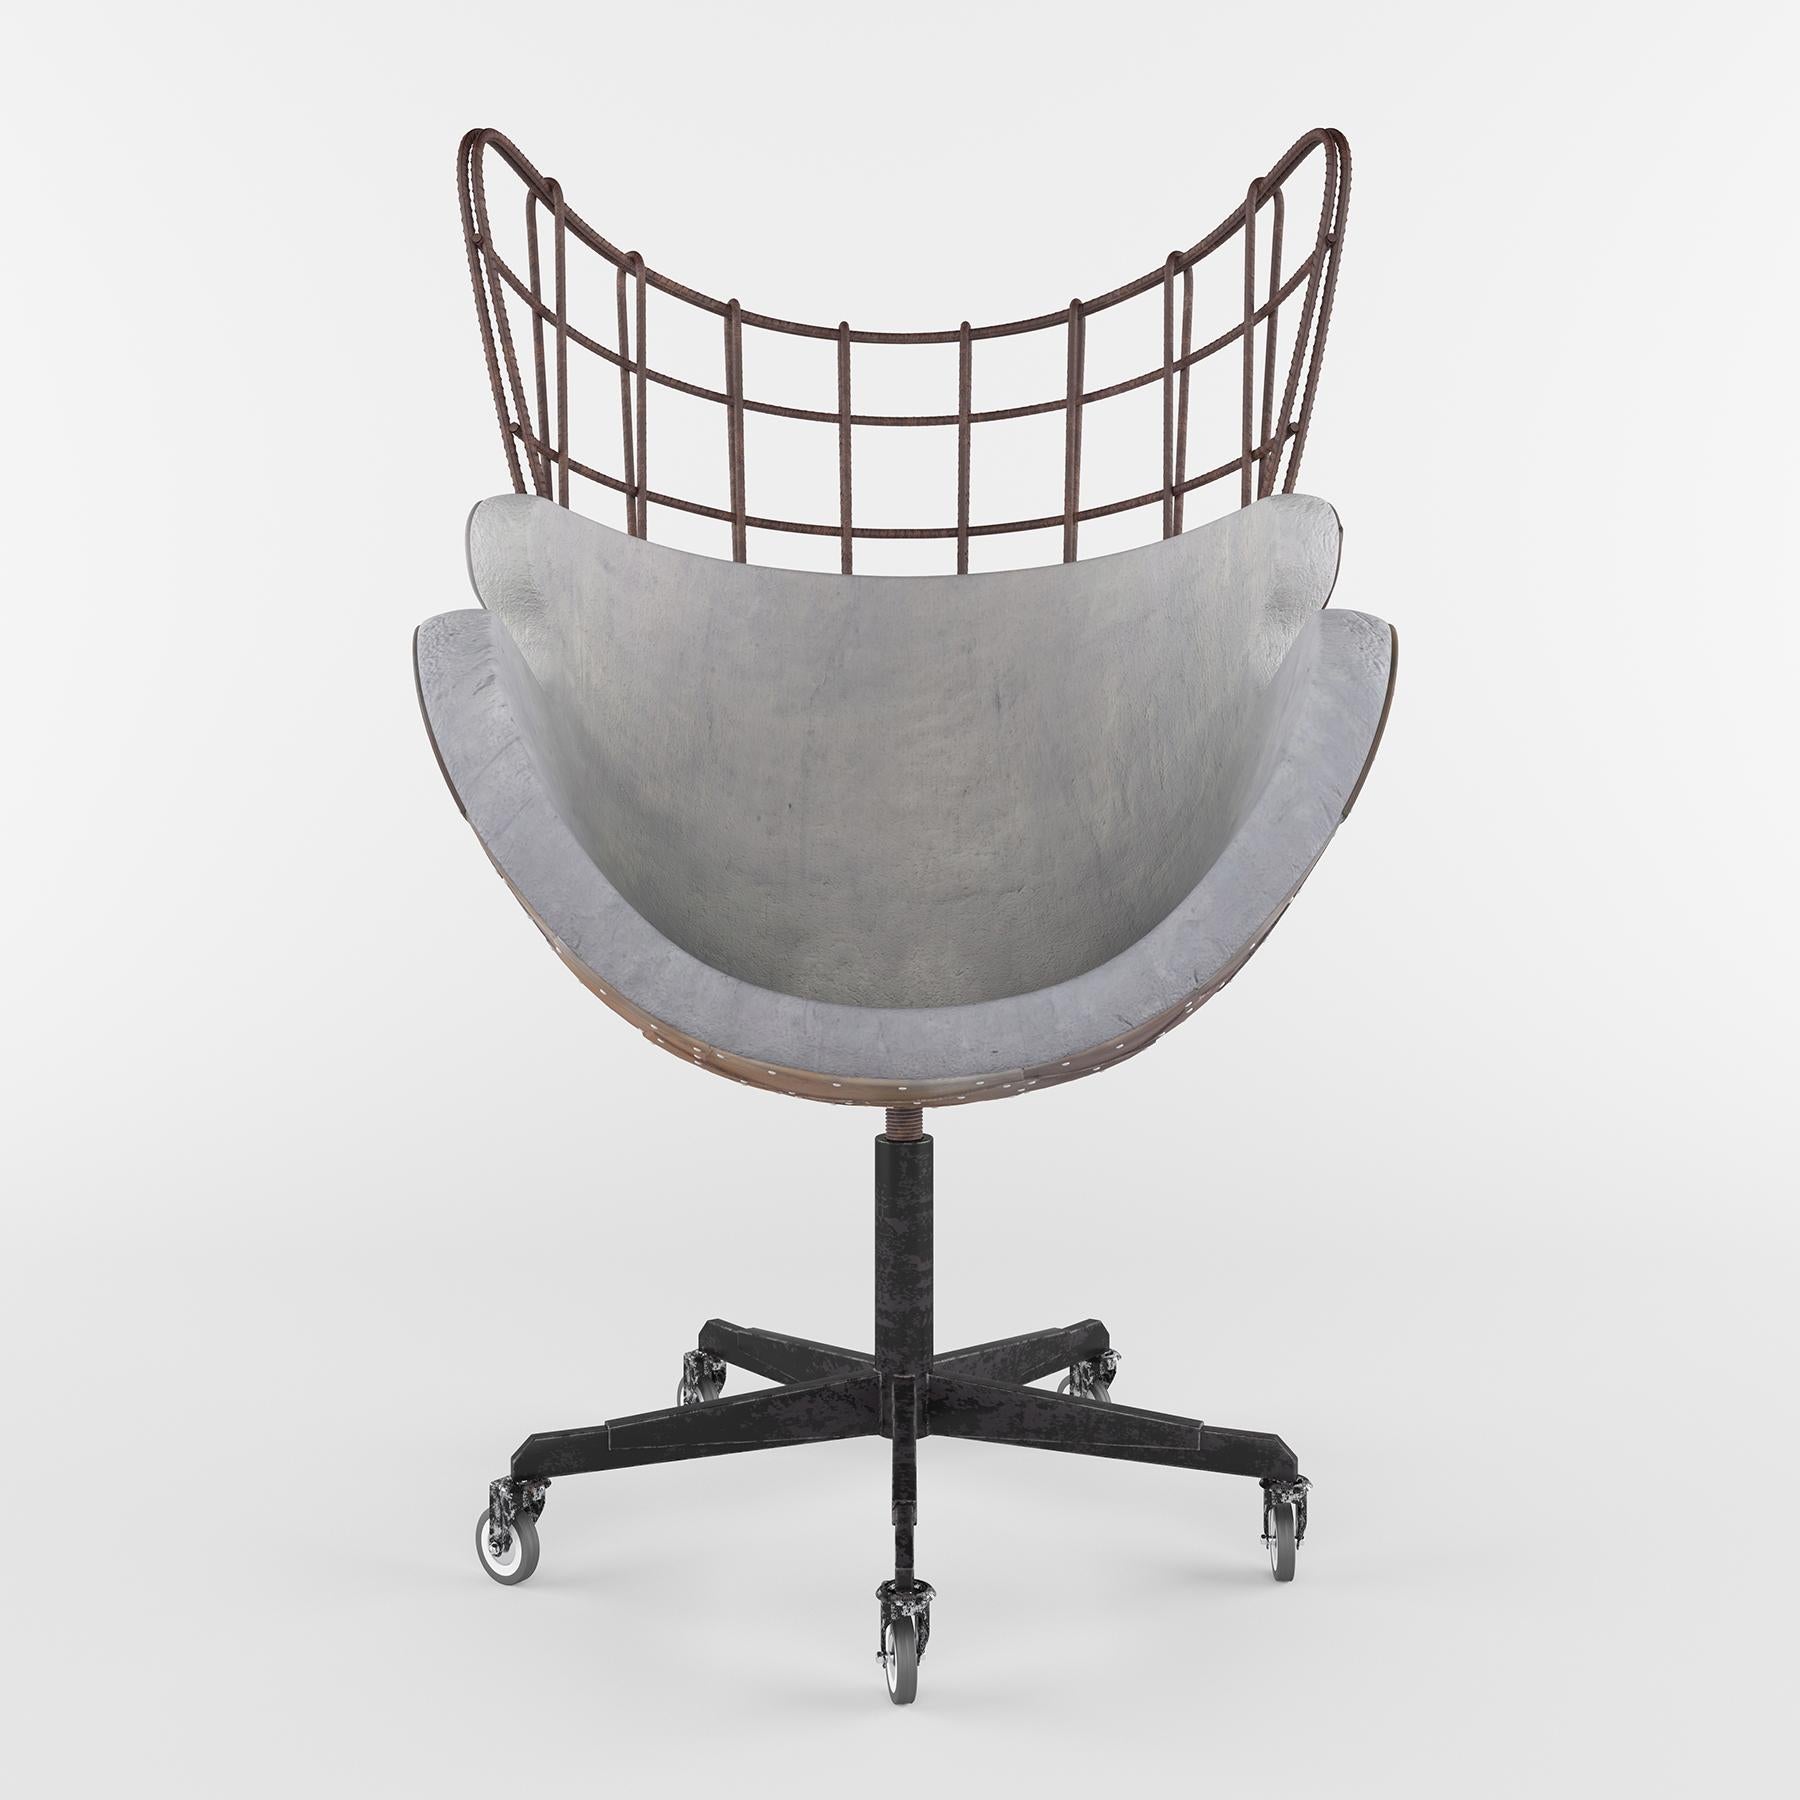 EGG-Stuhl von Arne Jacobsen. Es ist eine verblüffende Neuinterpretation des klassischen Designs der Moderne mit einem offensichtlichen urbanen Twist. Der aus Beton, Bewehrungsstäben und Metallplatten gefertigte Betonstuhl bringt die einzigartigen